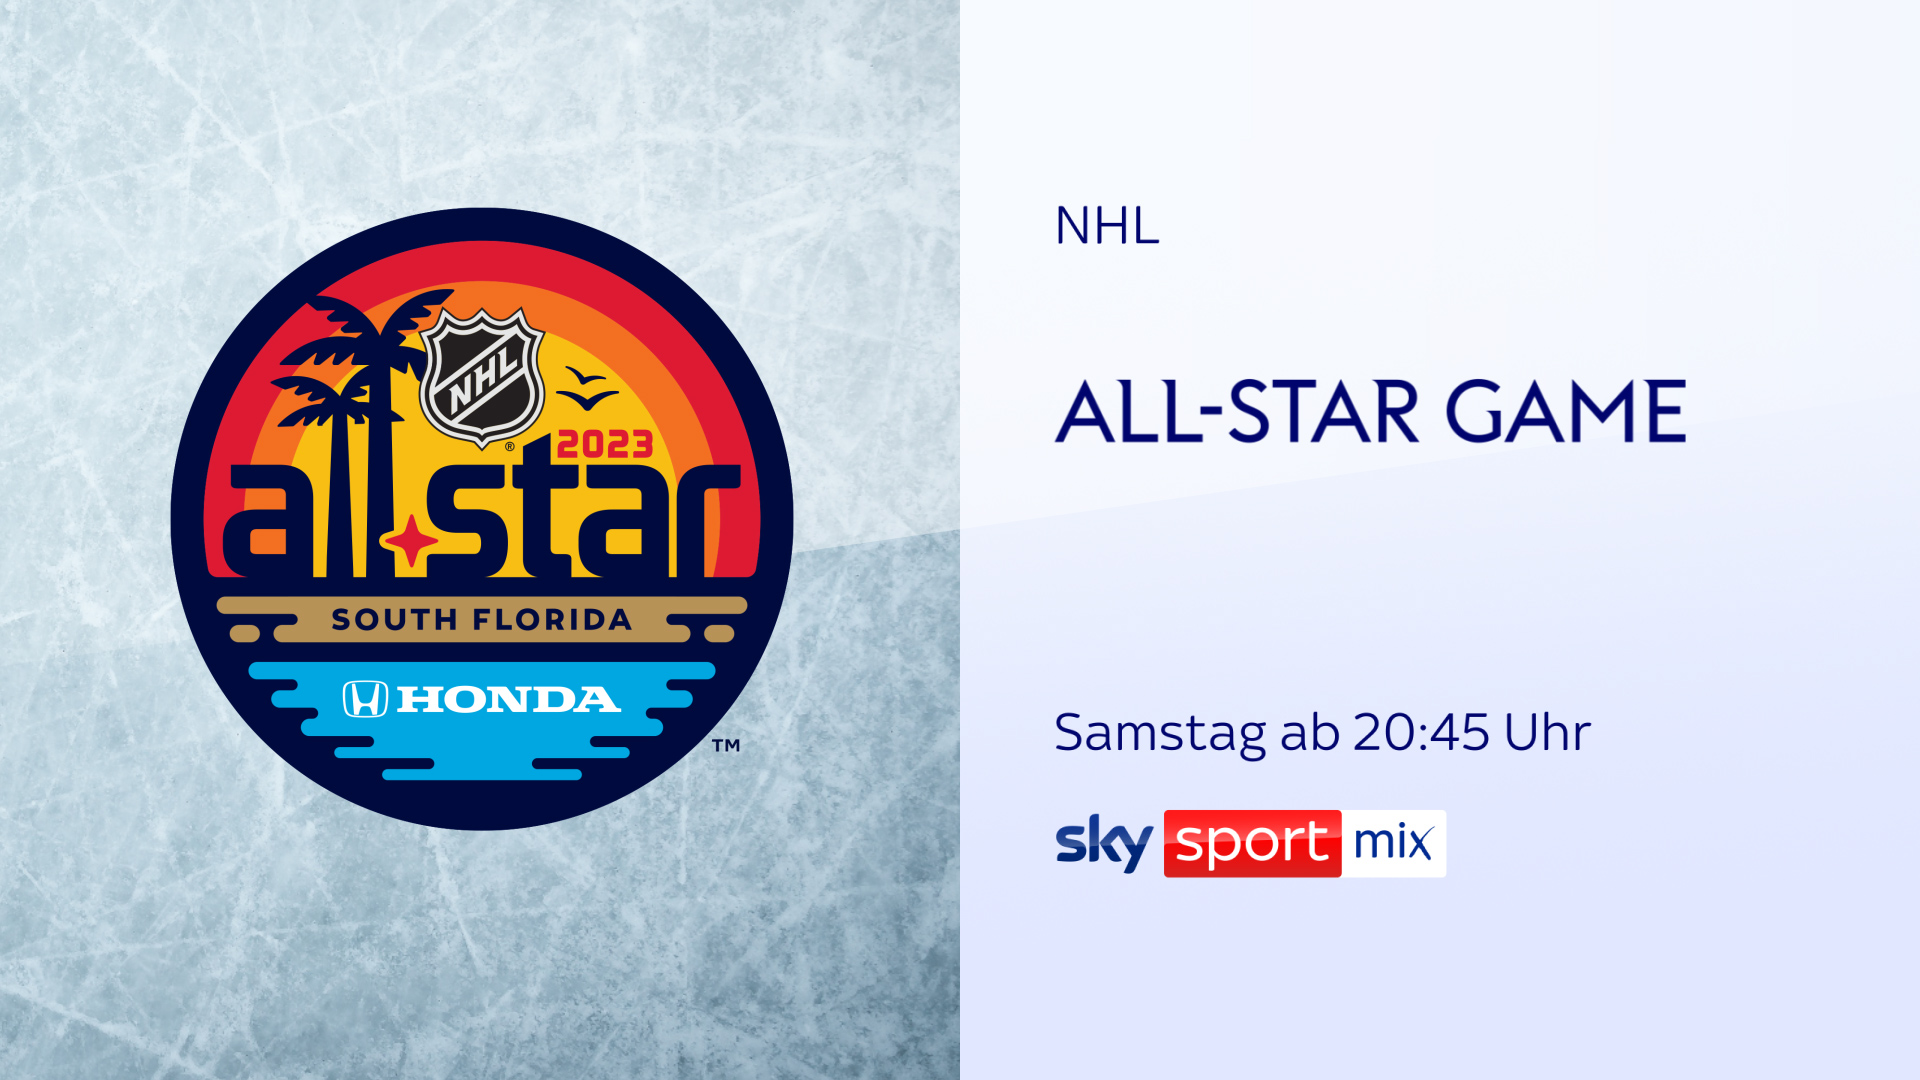 Die besten Eishockey-Spieler der Welt auf einer Eisfläche das NHL All-Star Game mit Leon Draisaitl am Wochenende live und exklusiv bei Sky